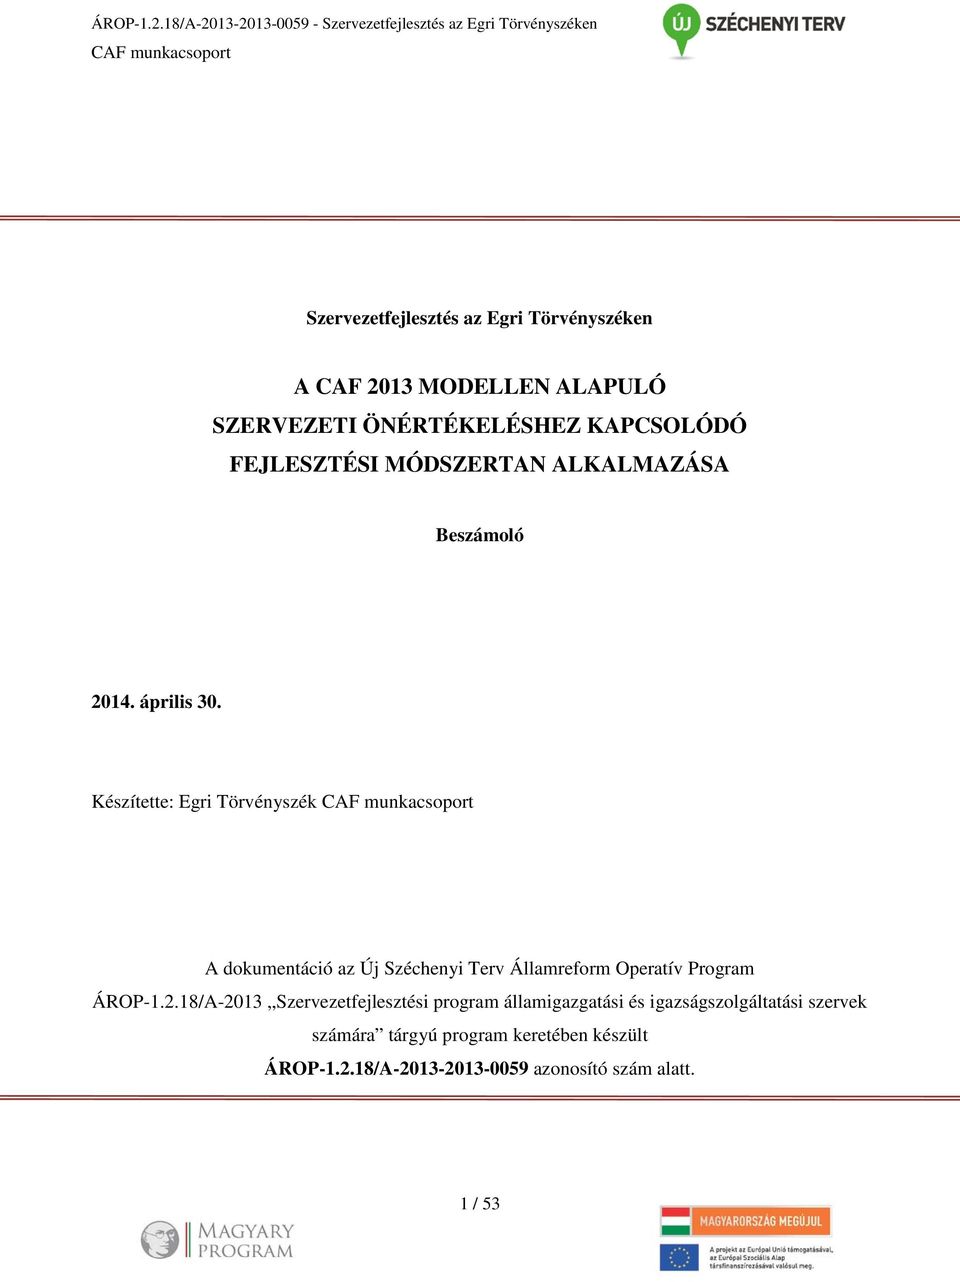 Készítette: Egri Törvényszék CAF munkacsoport A dokumentáció az Új Széchenyi Terv Államreform Operatív Program ÁROP-1.2.